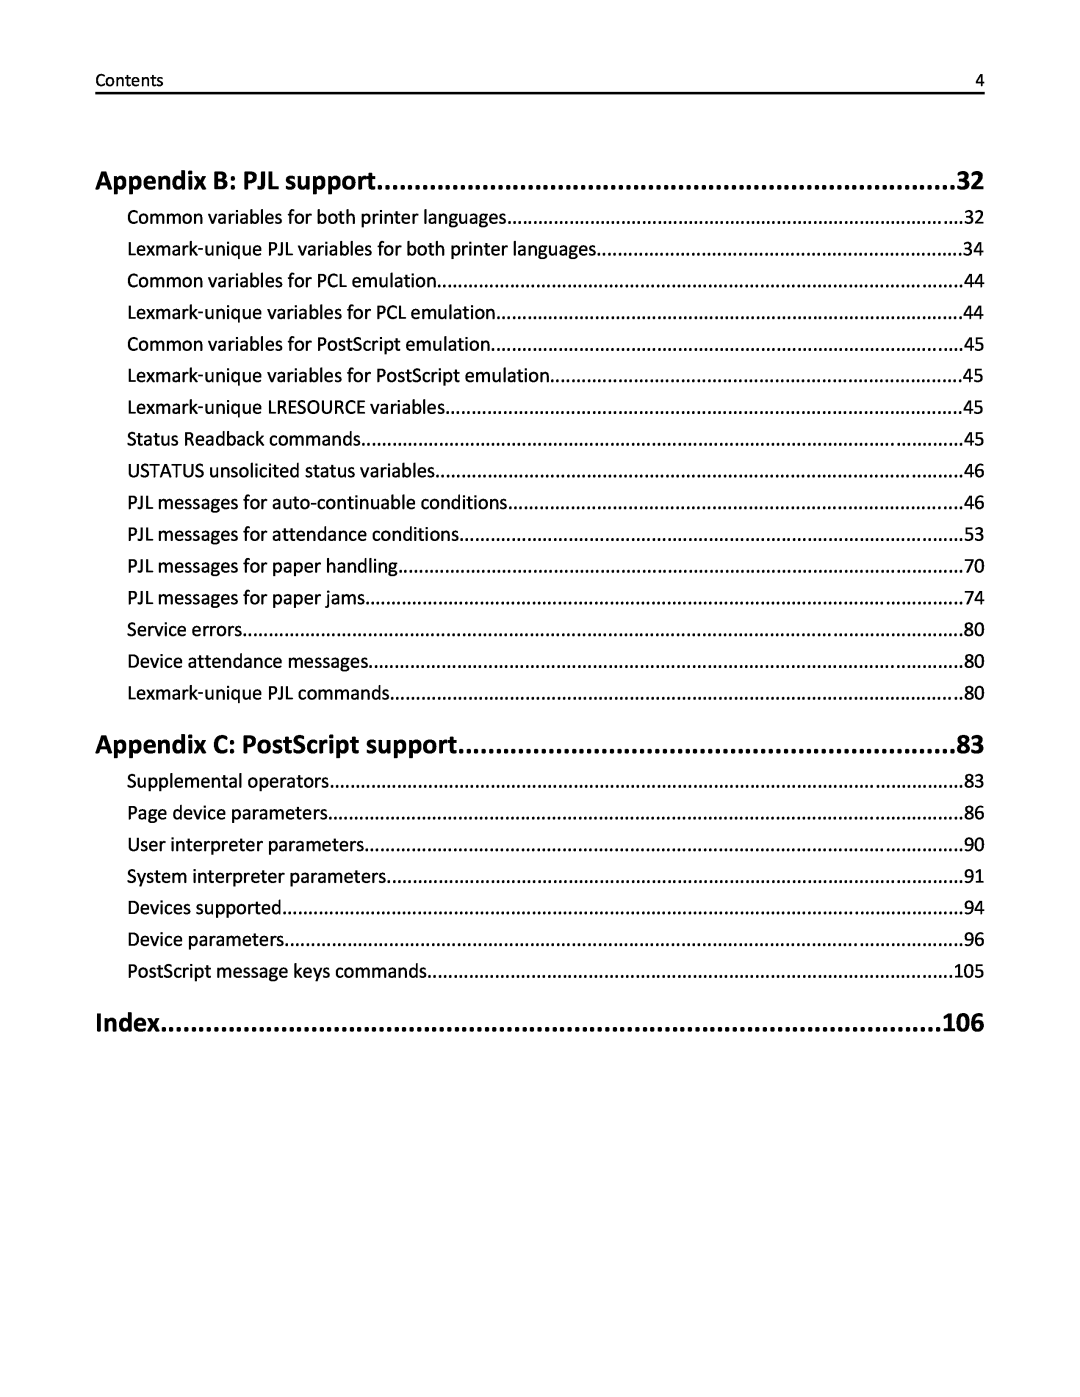 Lexmark 746n, 748dte, 748de, 746de, 746dn, 746dtn, 748e manual Appendix B PJL support, Appendix C: PostScript support, Index 